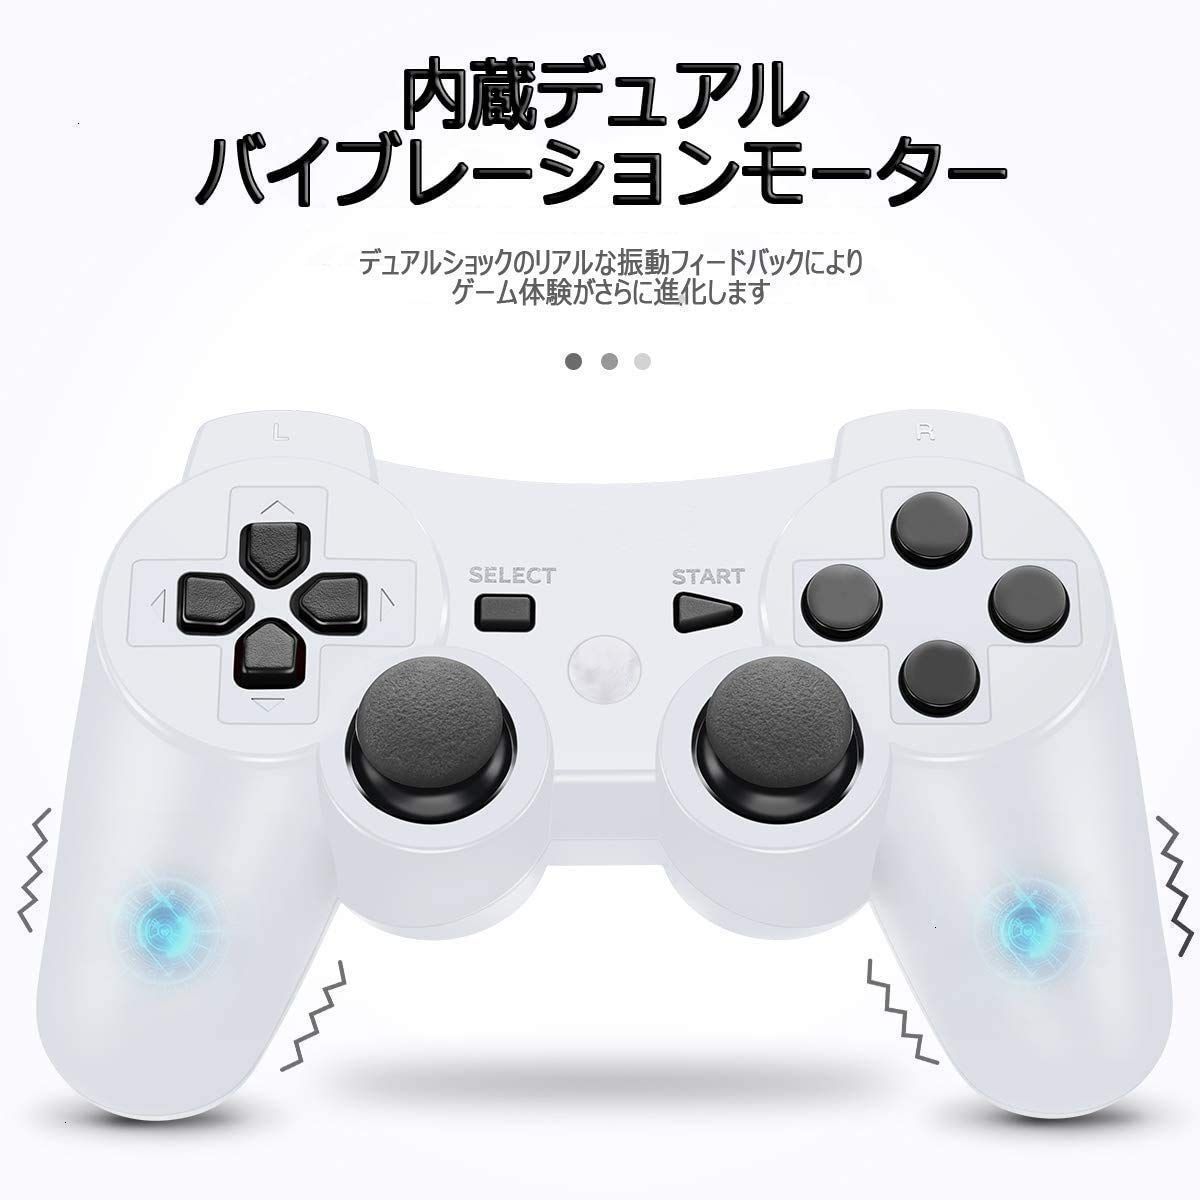 【人気商品】PS3 用 ワイヤレスコントローラー Fancyan 6軸センサー DUAL SHOCK3 ゲームパット 互換対応 USB ケーブル 日本語説明書(白)